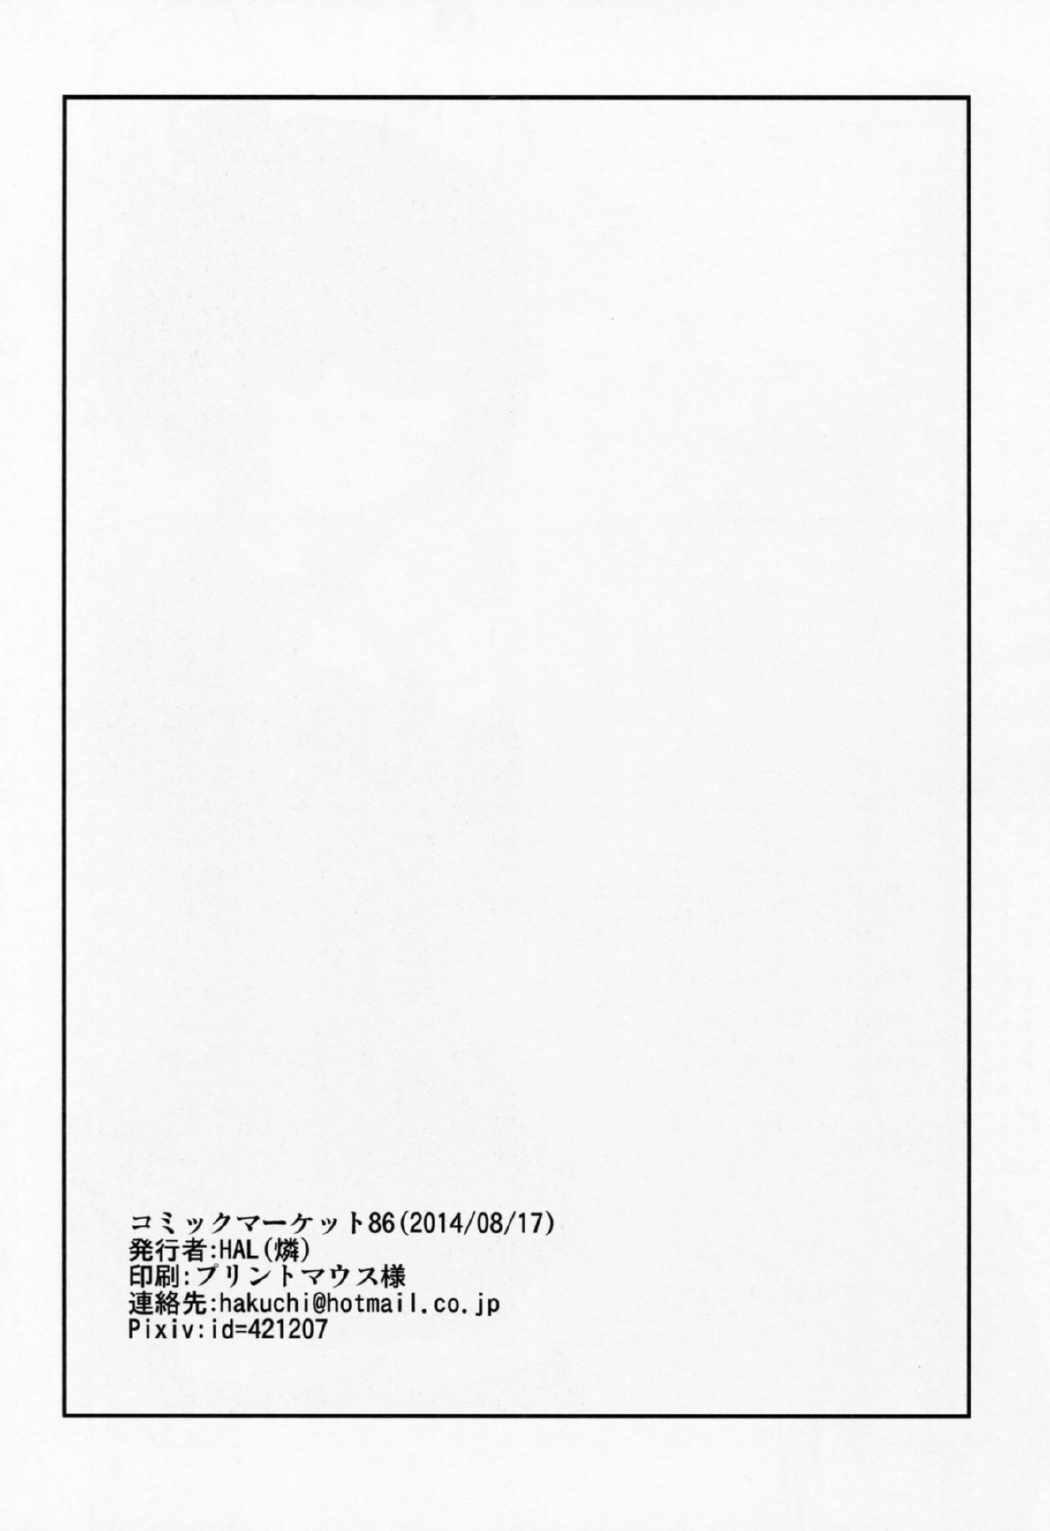 Straight Konton Naru Eros e Youkoso - Chuunibyou demo koi ga shitai Femdom Clips - Page 15